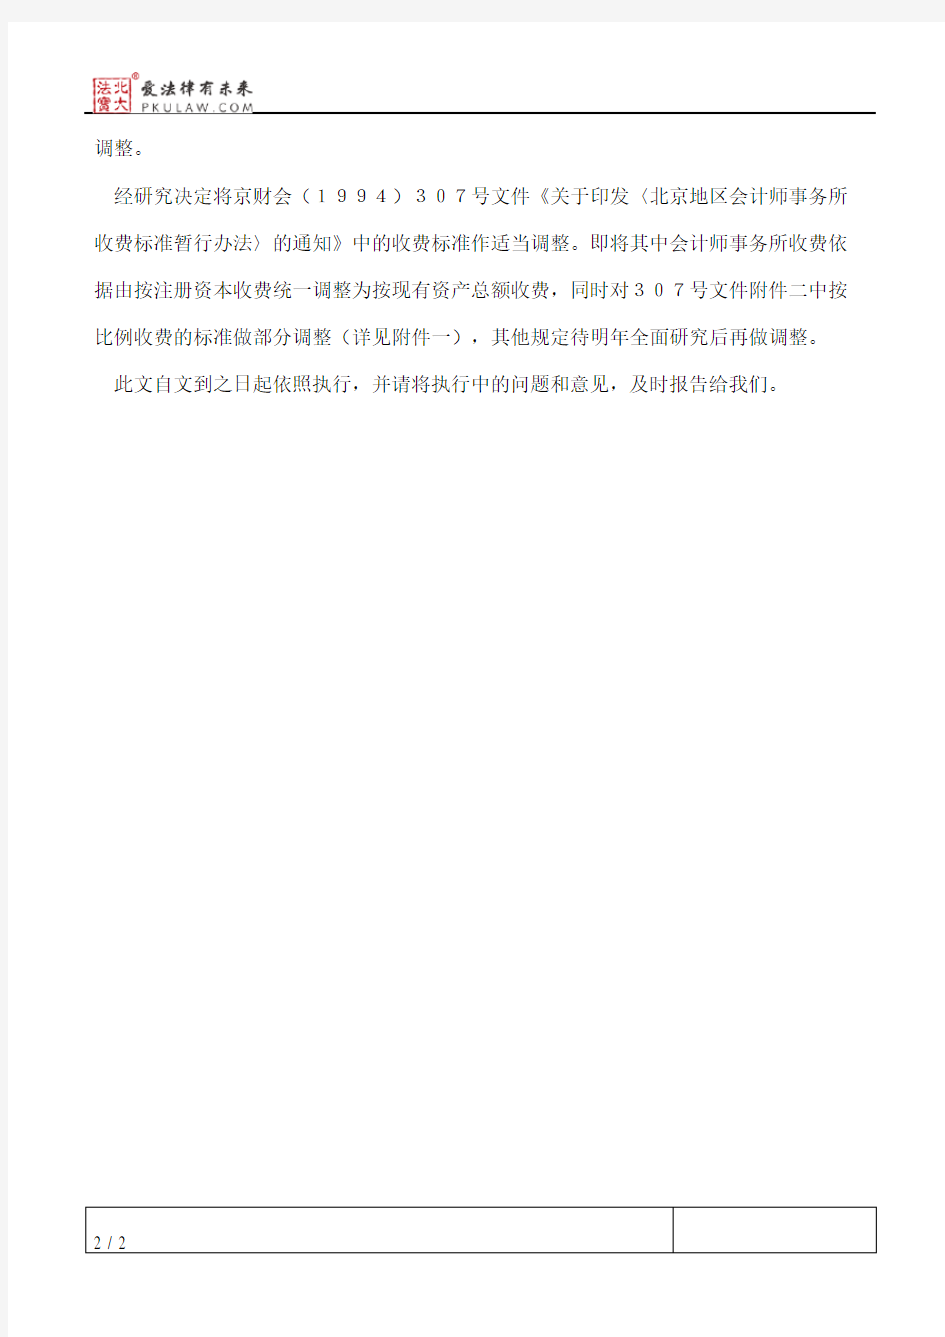 北京市财政局关于调整北京地区会计师事务所收费标准的通知